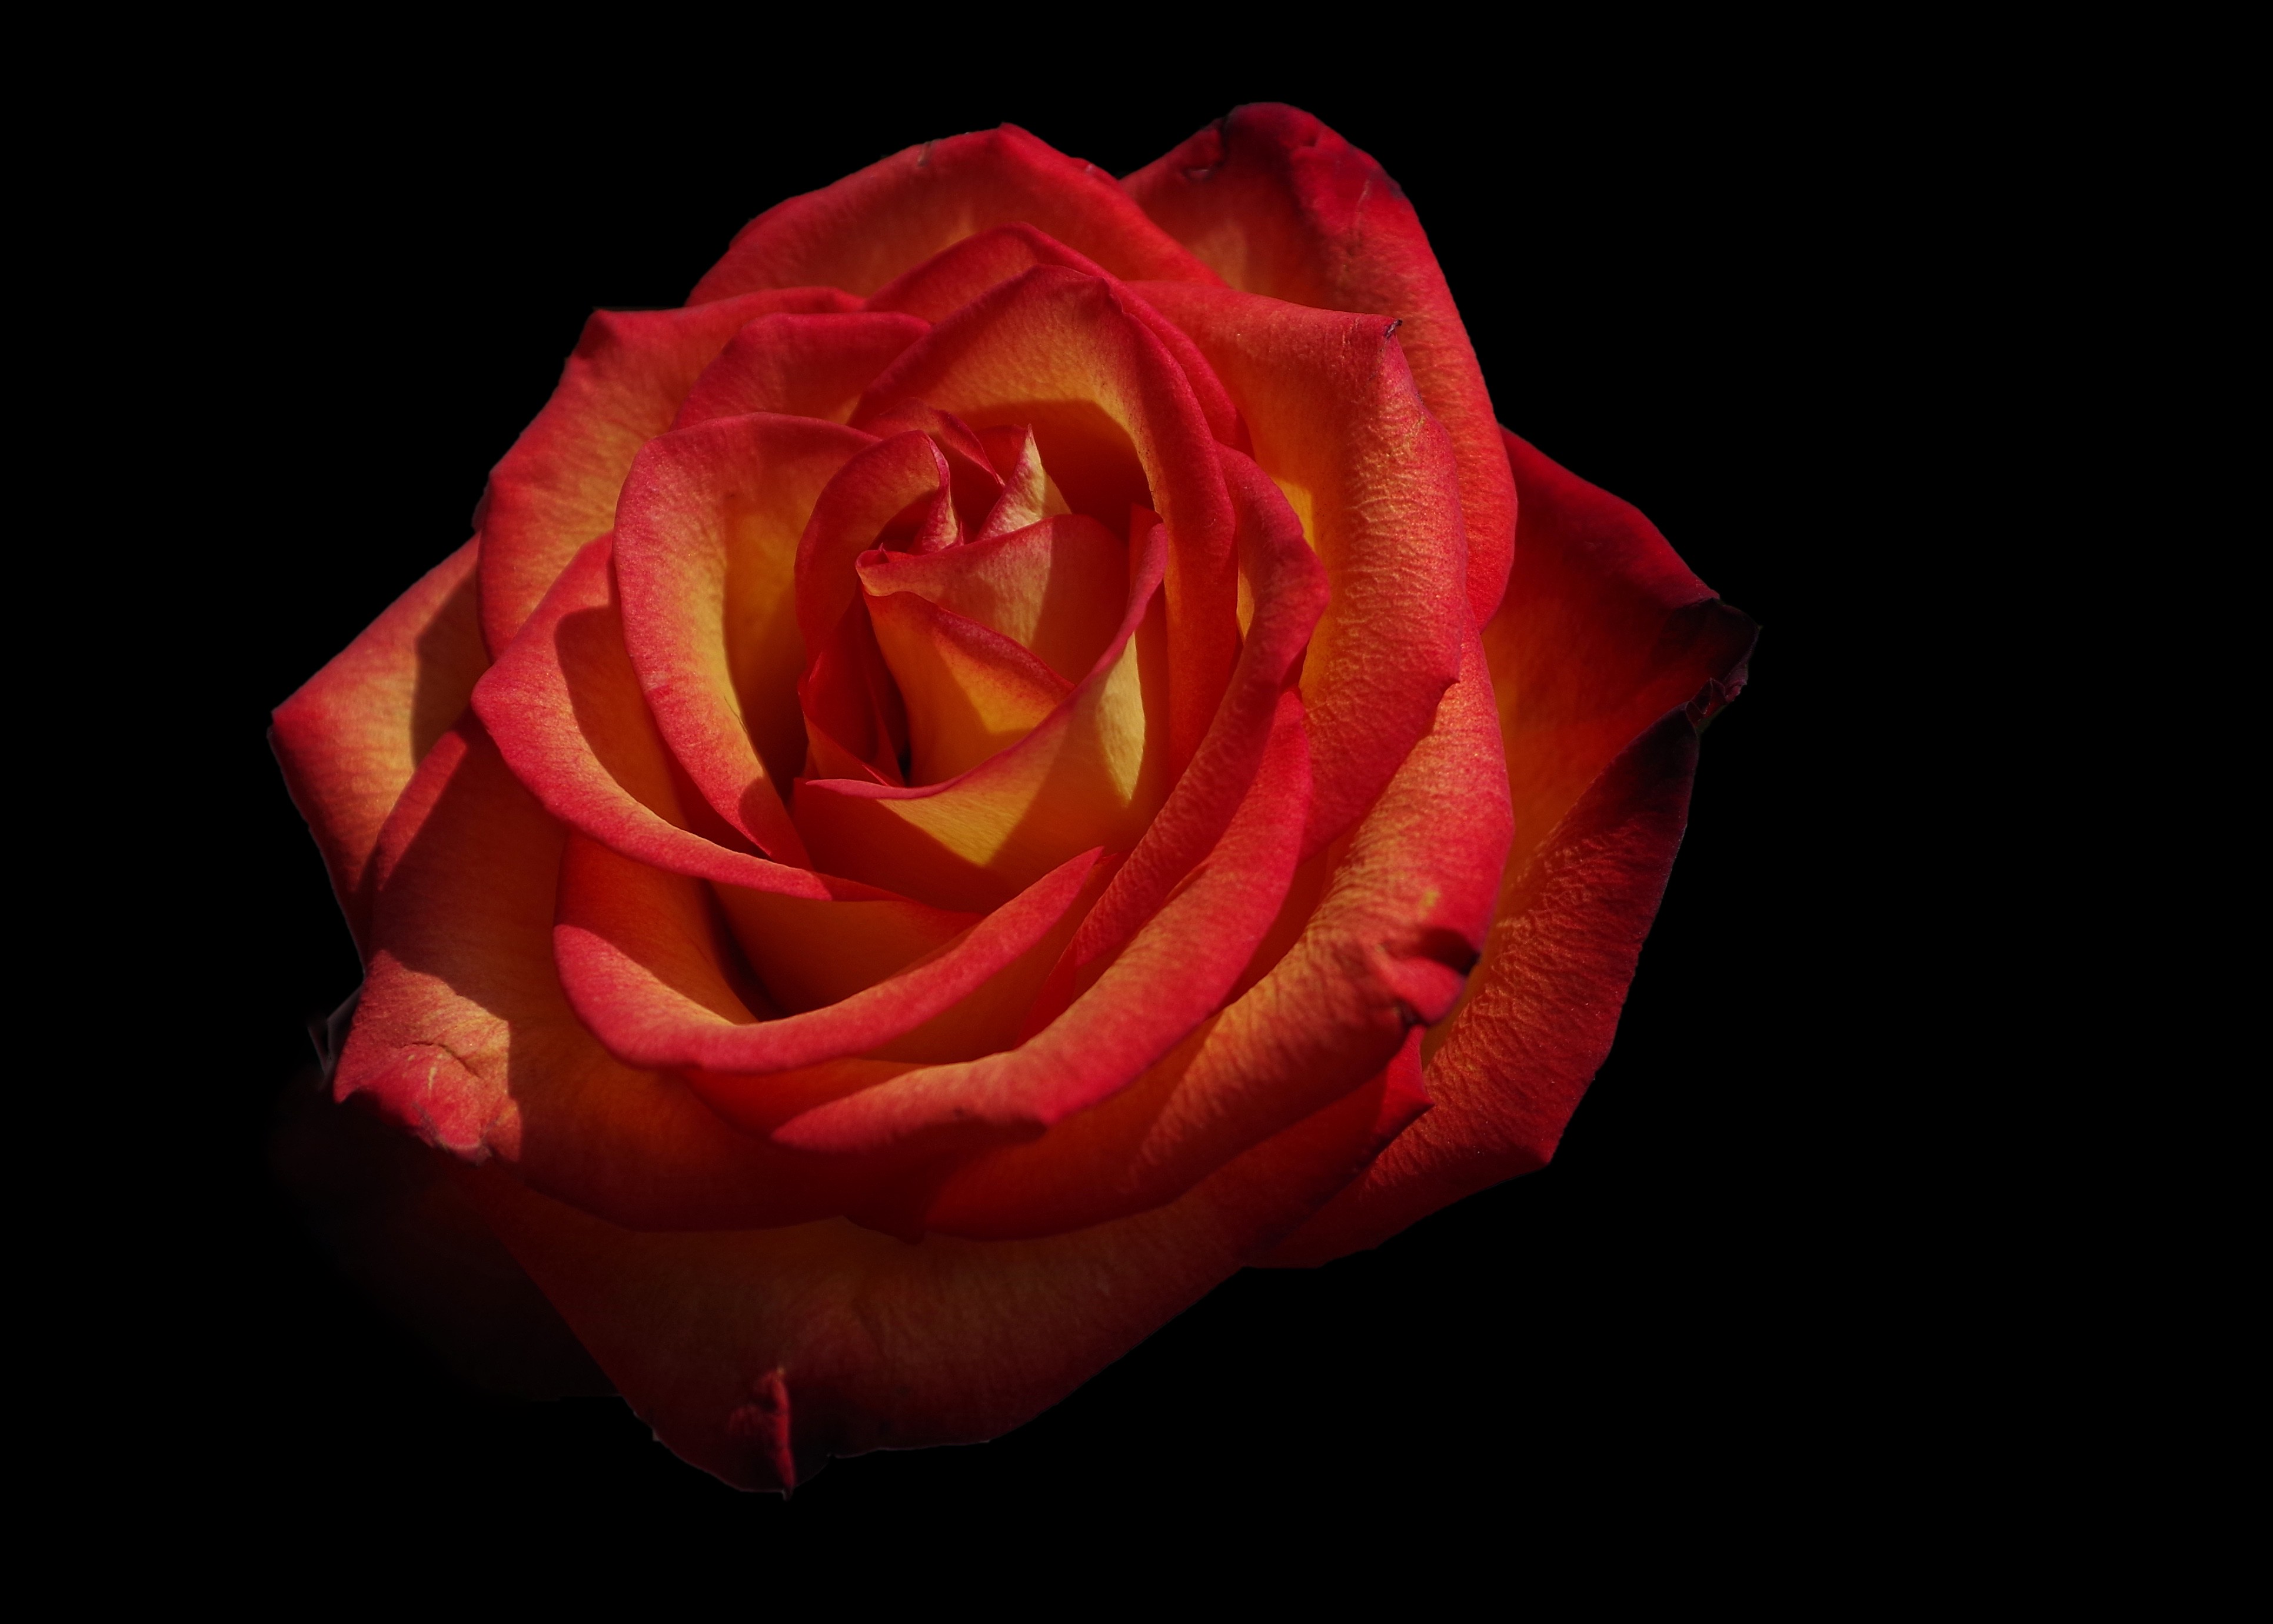 flowers, red, rose flower, rose, petals Image for desktop